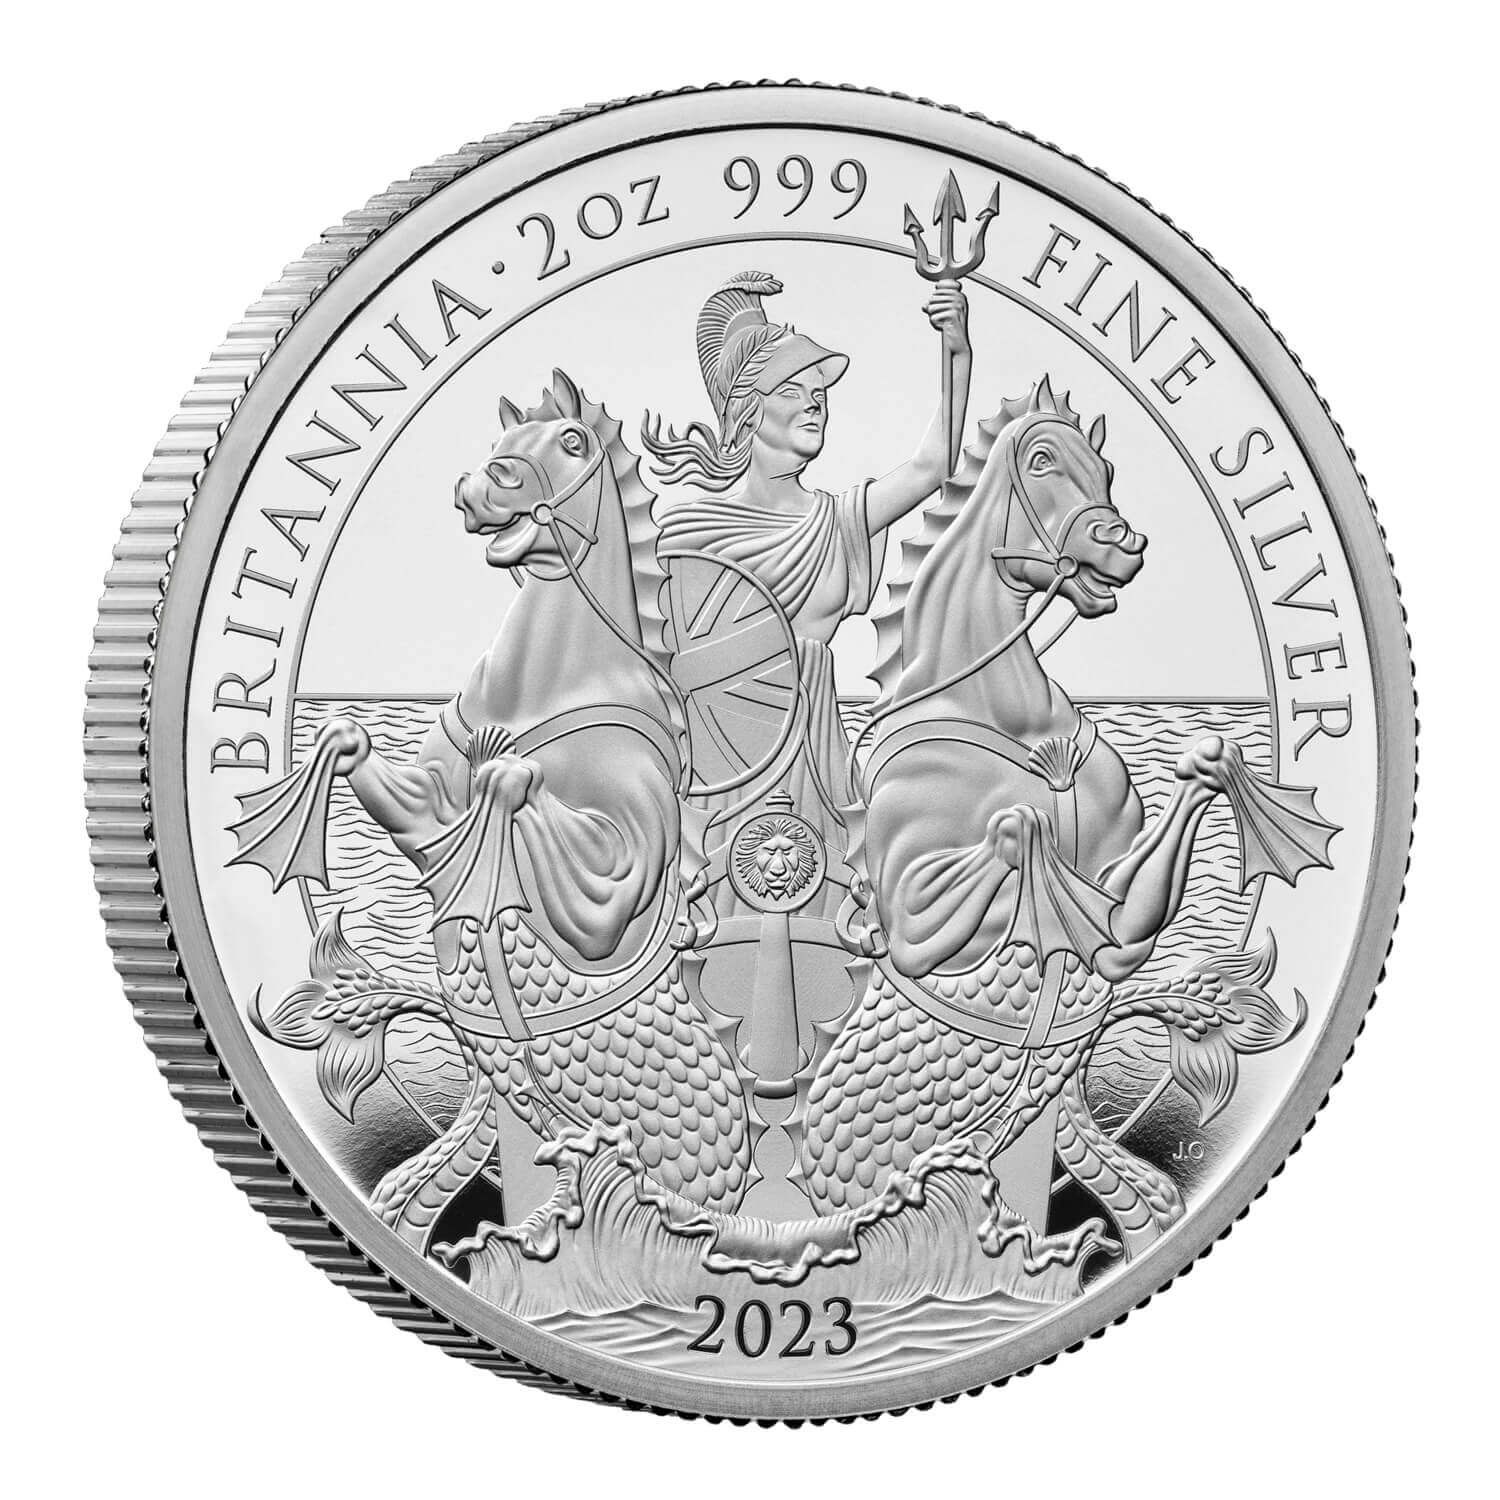 2023 イギリス ブリタニア 2オンス プルーフ銀貨【限定1000枚 